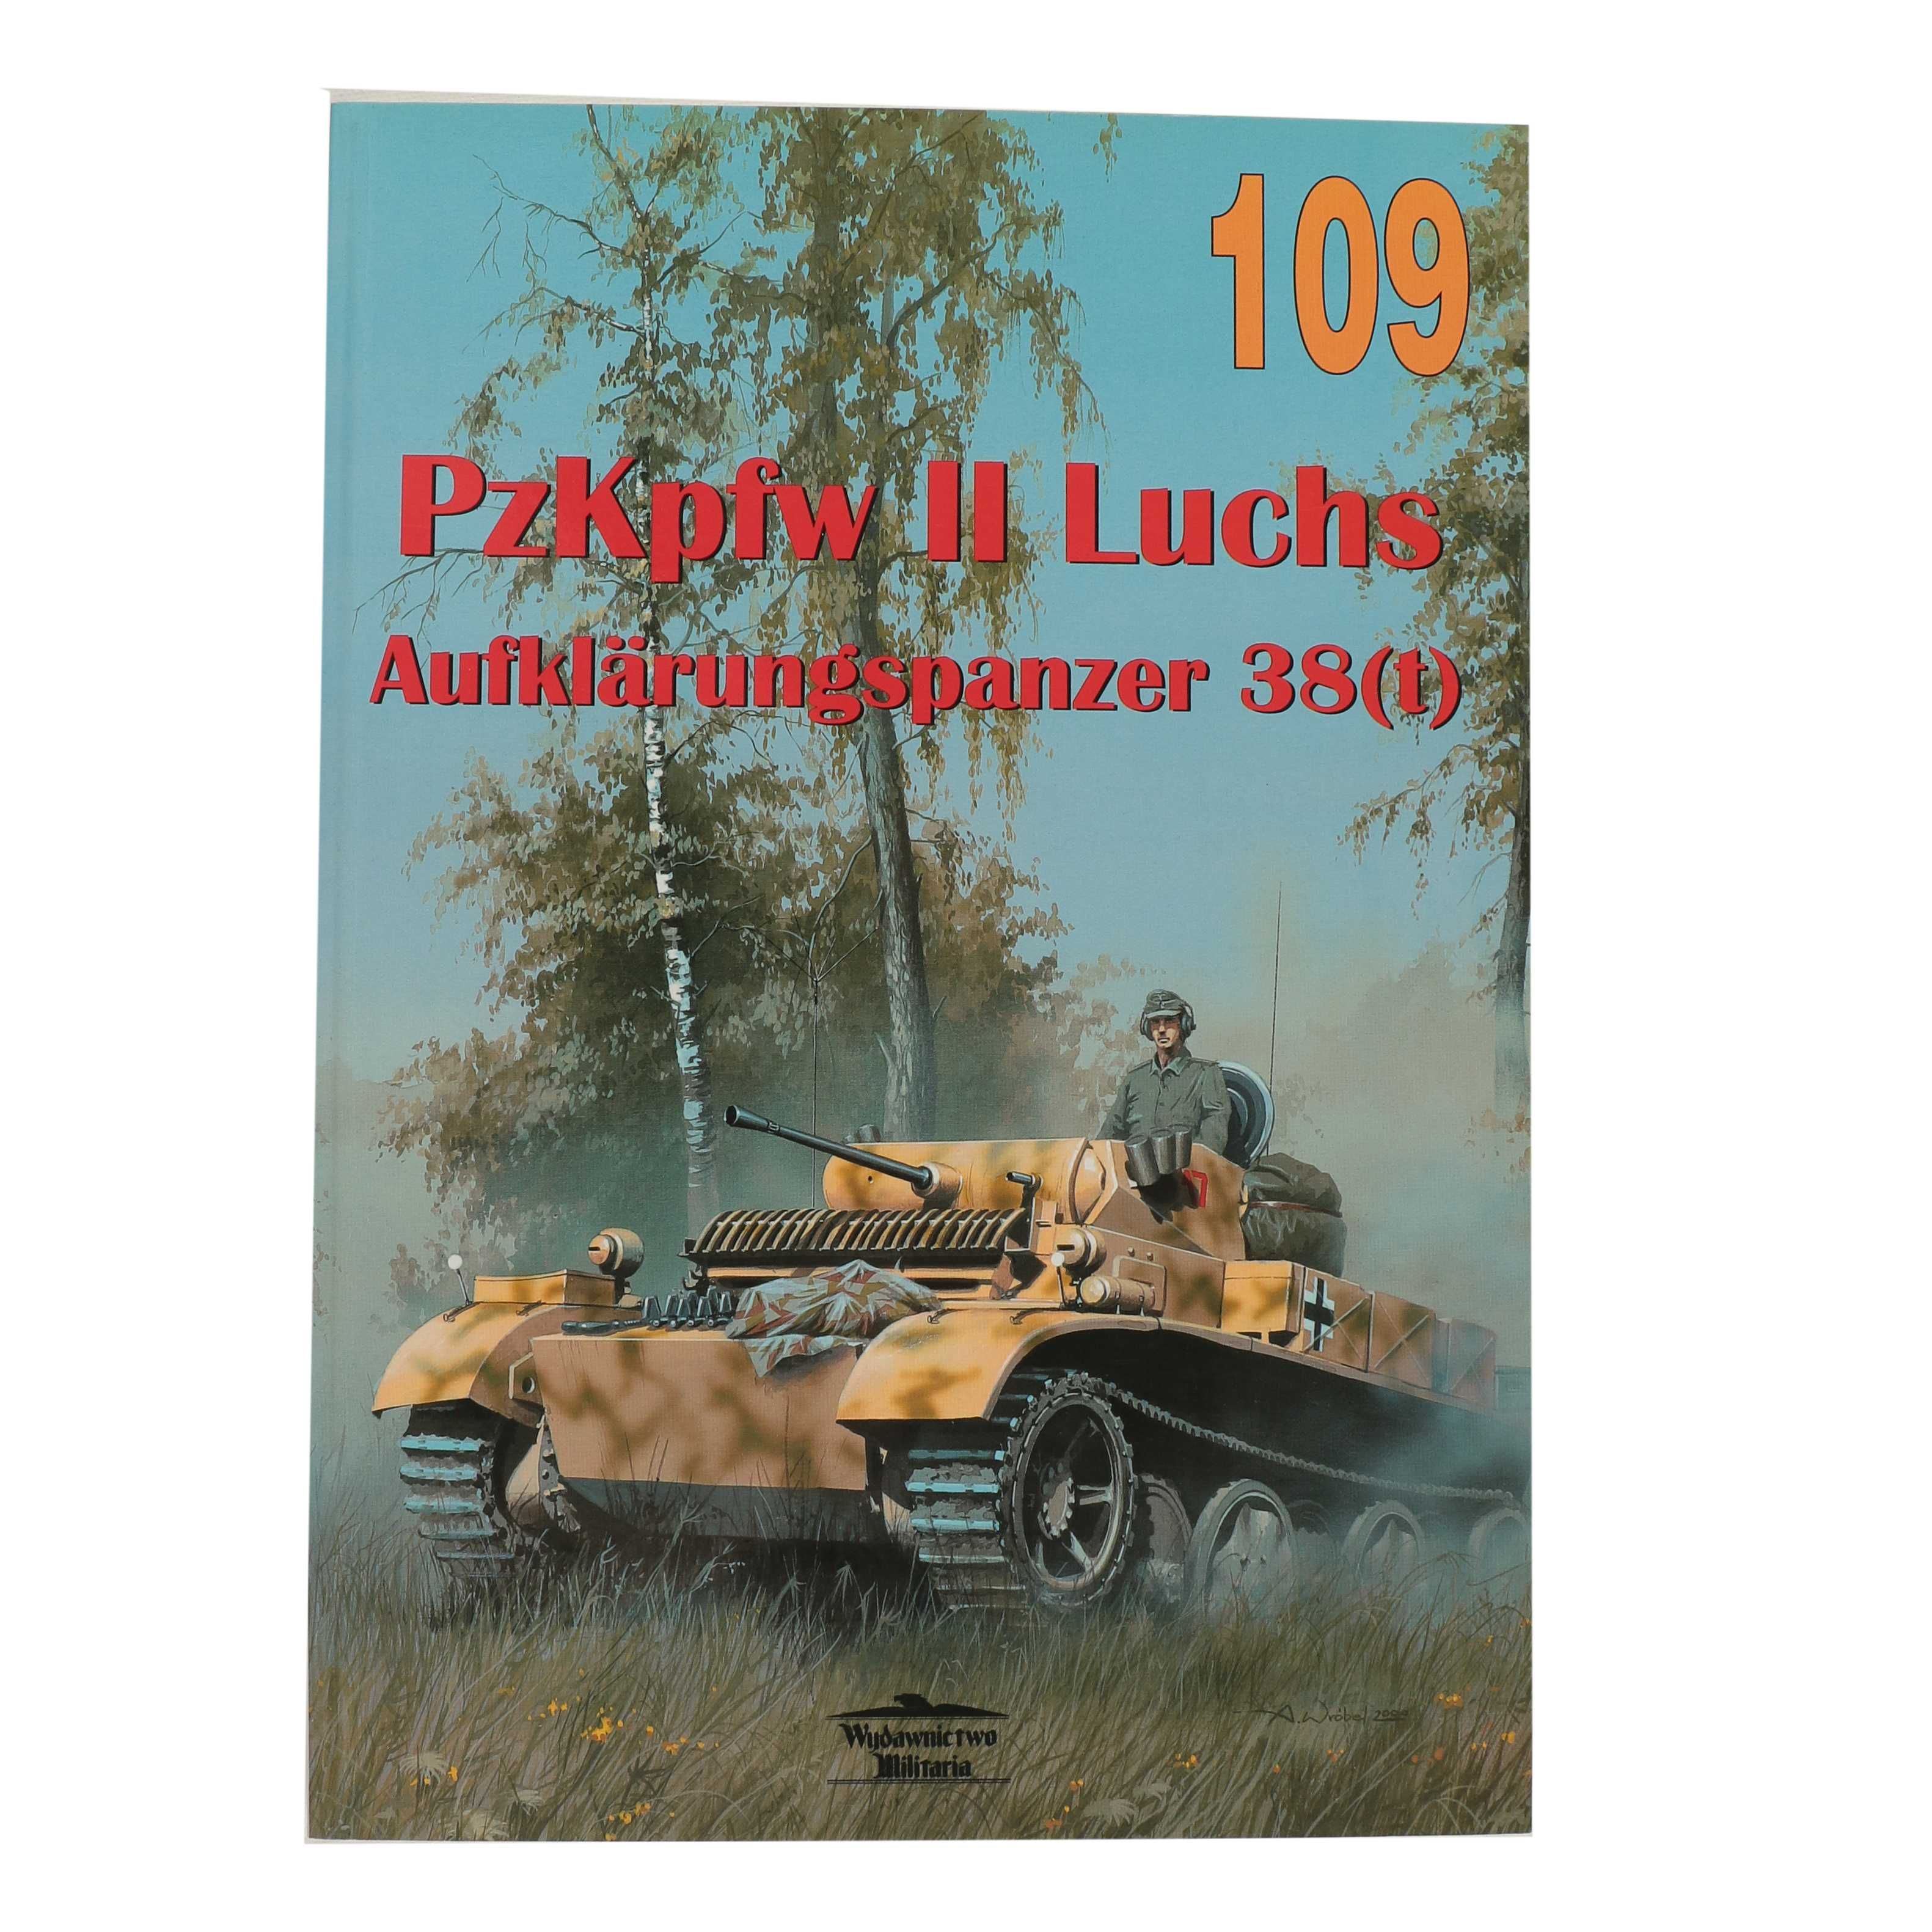 PzKpfw II Luchs Aufklarungspanzer 38 Militaria  109